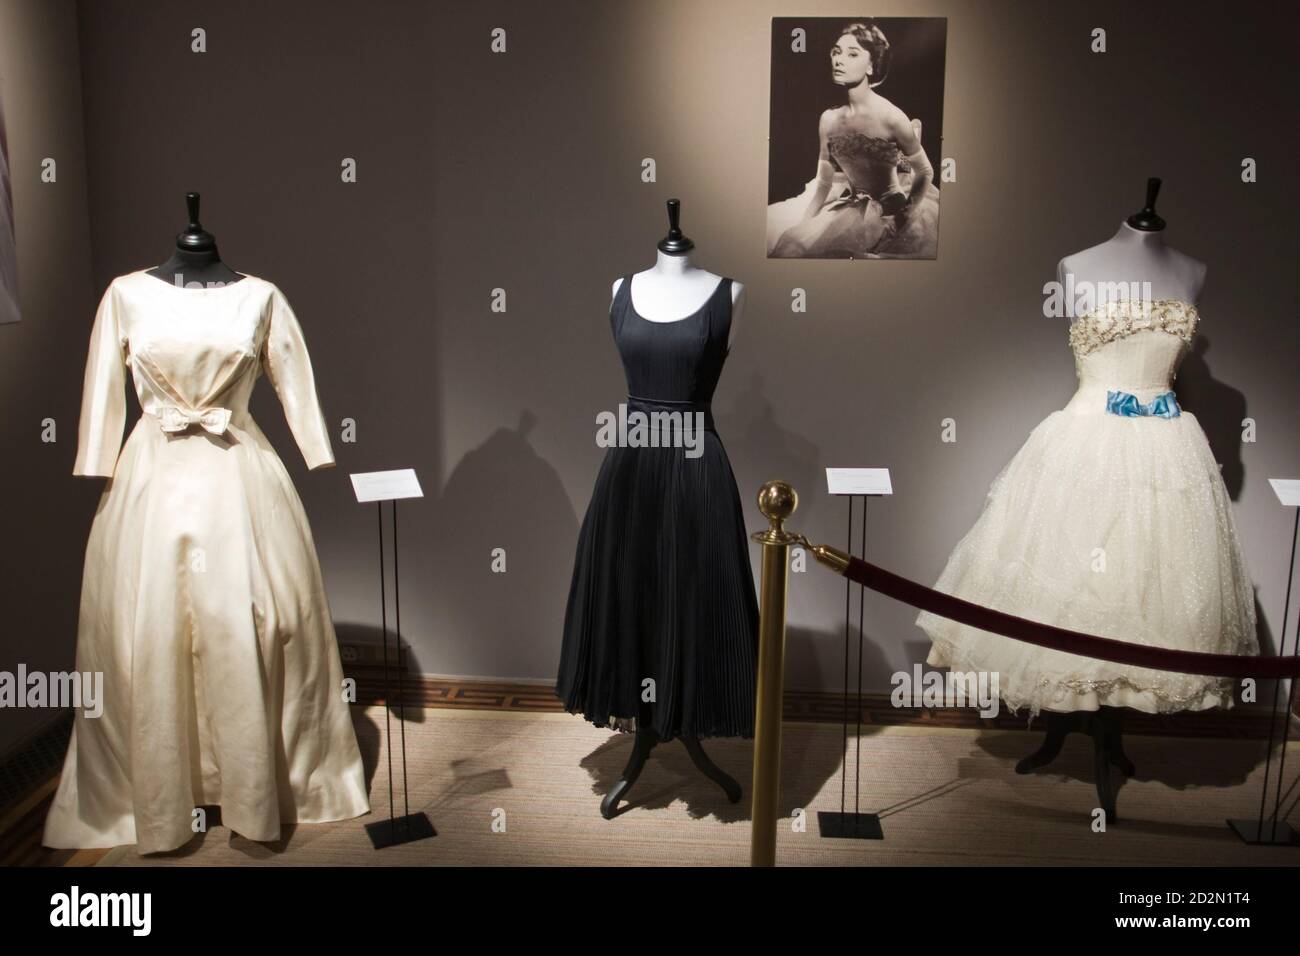 Ein Hochzeitskleid (L) entstand von Fontana, die Schwestern für die  Hochzeit der Schauspielerin Audrey Hepburn, James Hanson im Jahr 1952, die  nachträglich storniert wurde, mit anderen Kleidern getragen von Hepburn  angezeigt wird